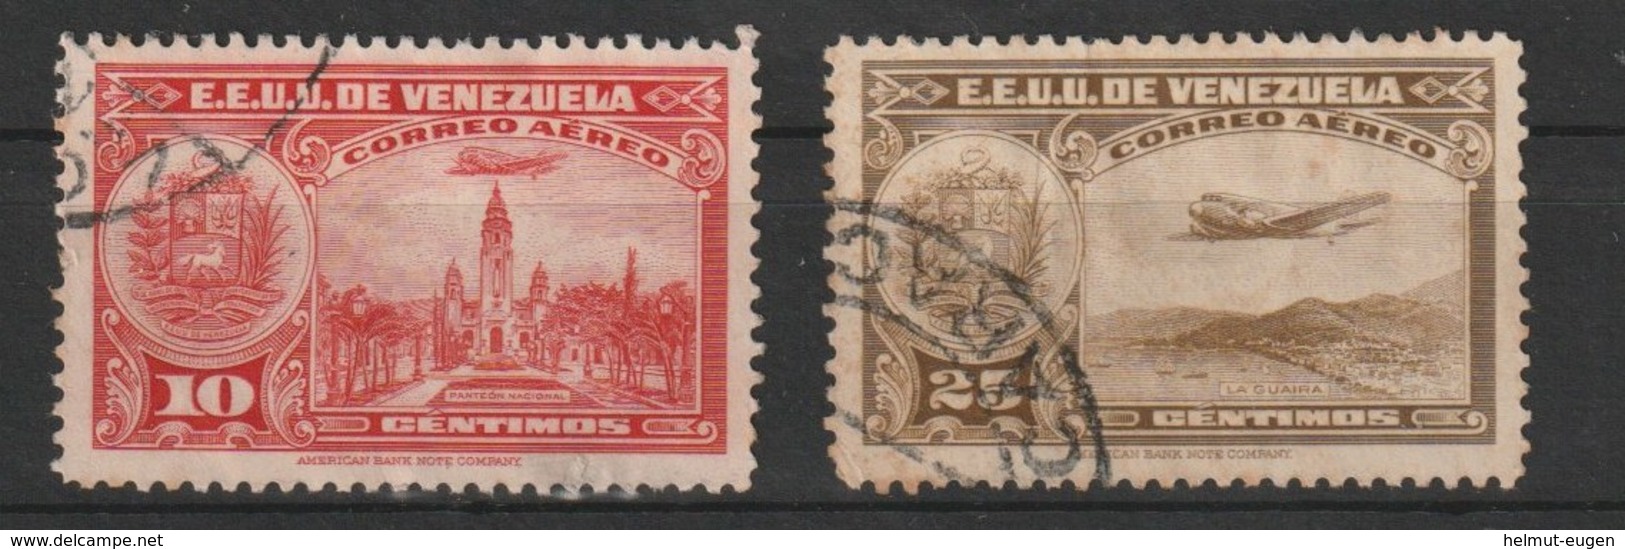 MiNr. 253, 258 Venezuela  1938, Febr./1939. Flugpostmarken: La Guaira, Panteón, - Venezuela